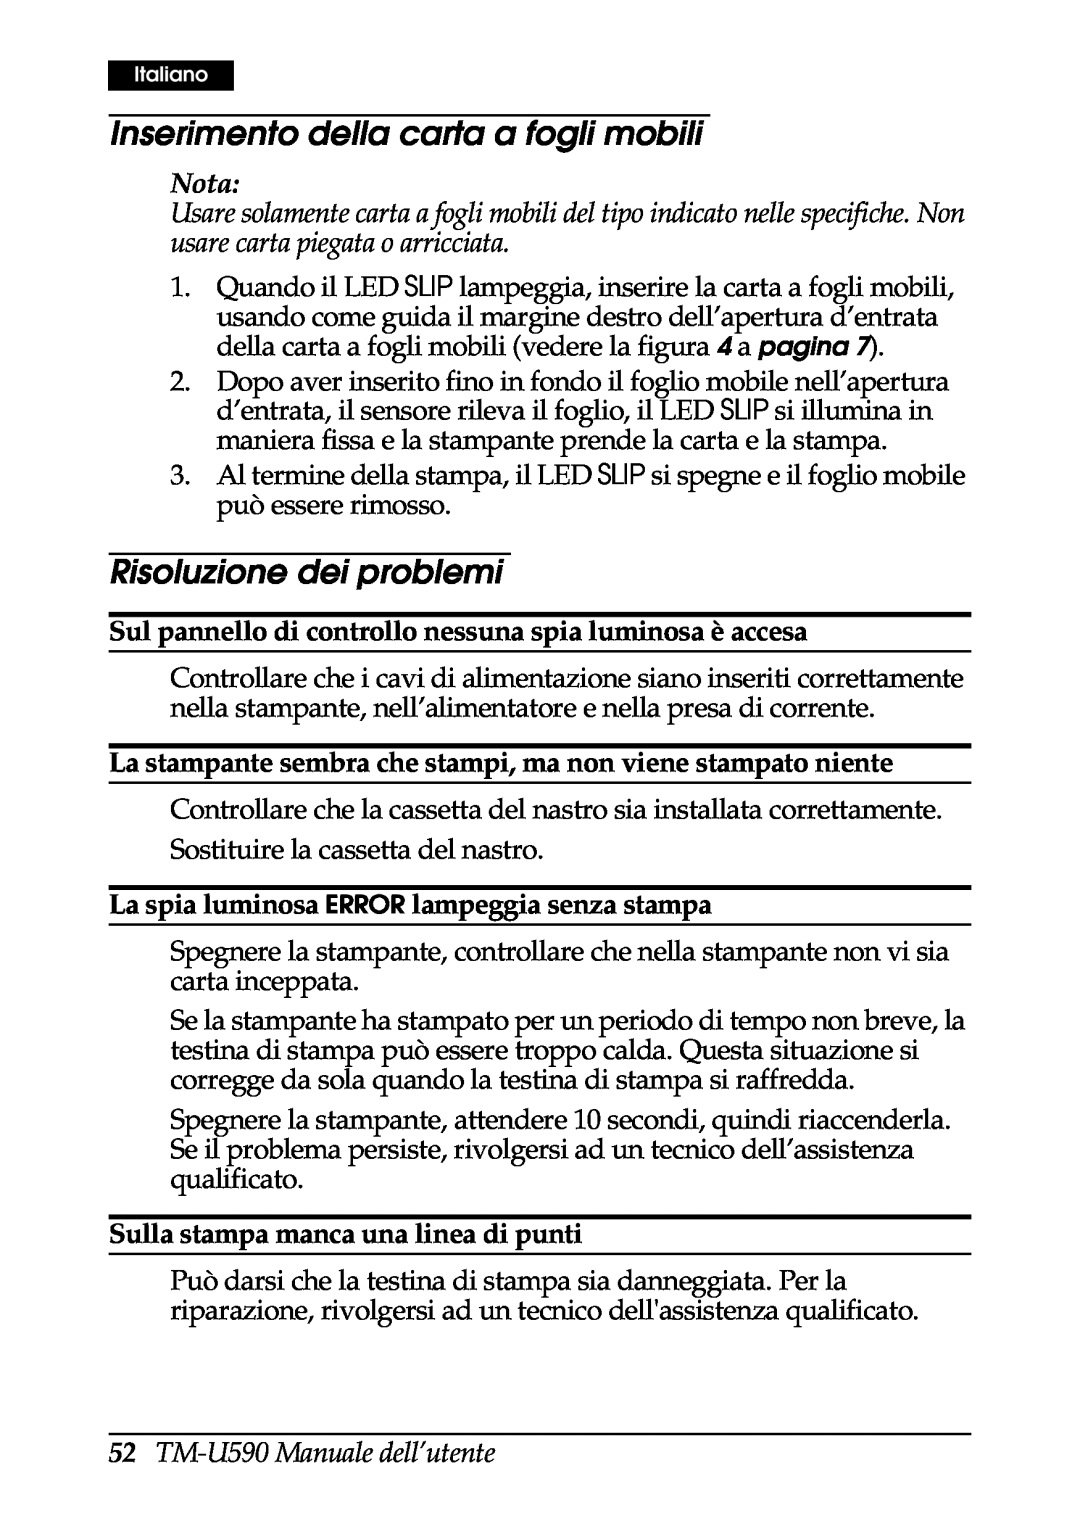 FARGO electronic Inserimento della carta a fogli mobili, Risoluzione dei problemi, TM-U590 Manuale dell’utente, Nota 